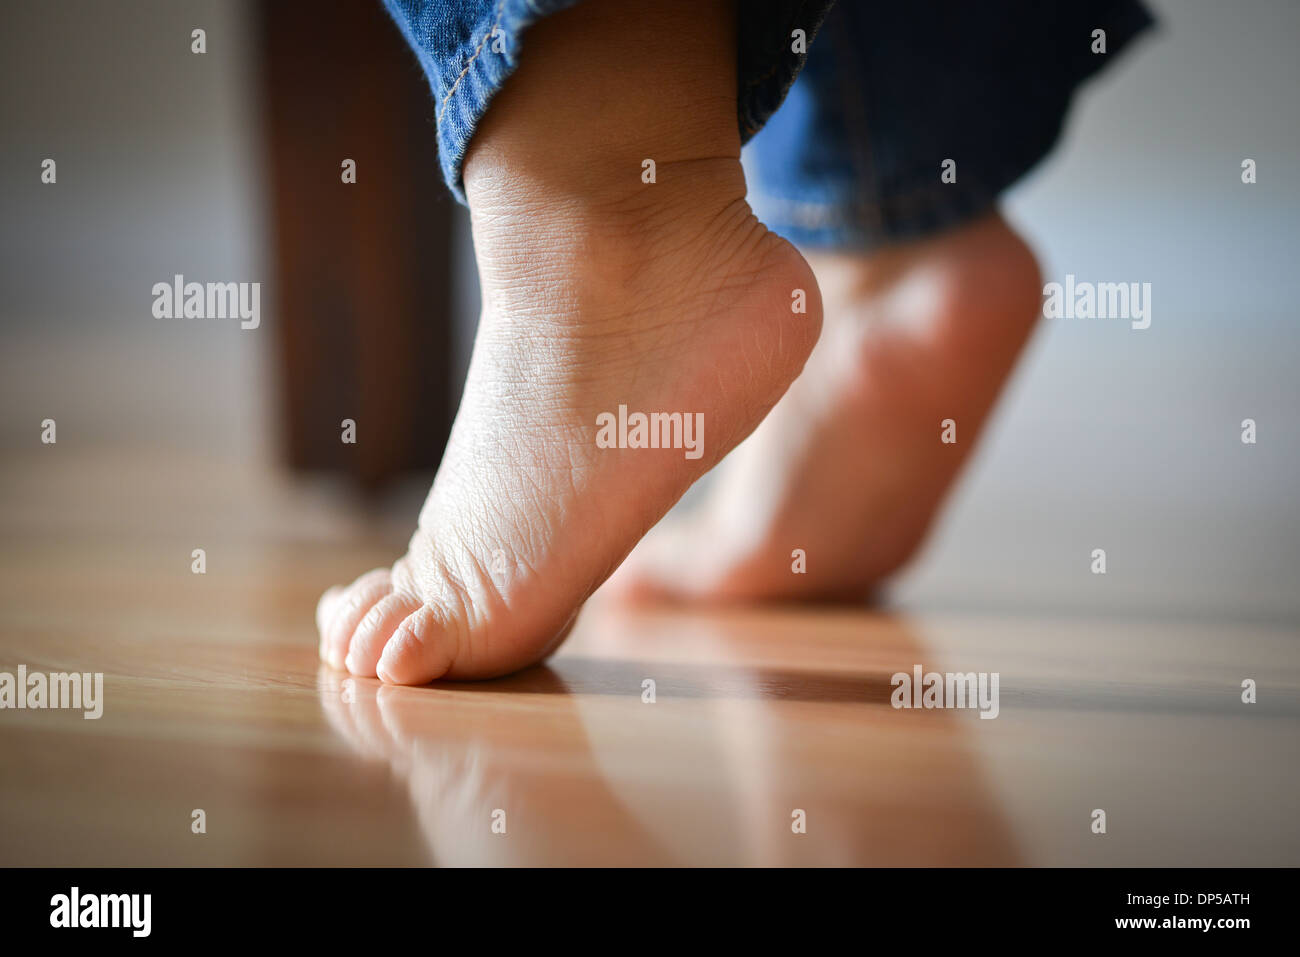 Les pieds de l'enfant sur la pointe des pieds - Innocence Concept Banque D'Images